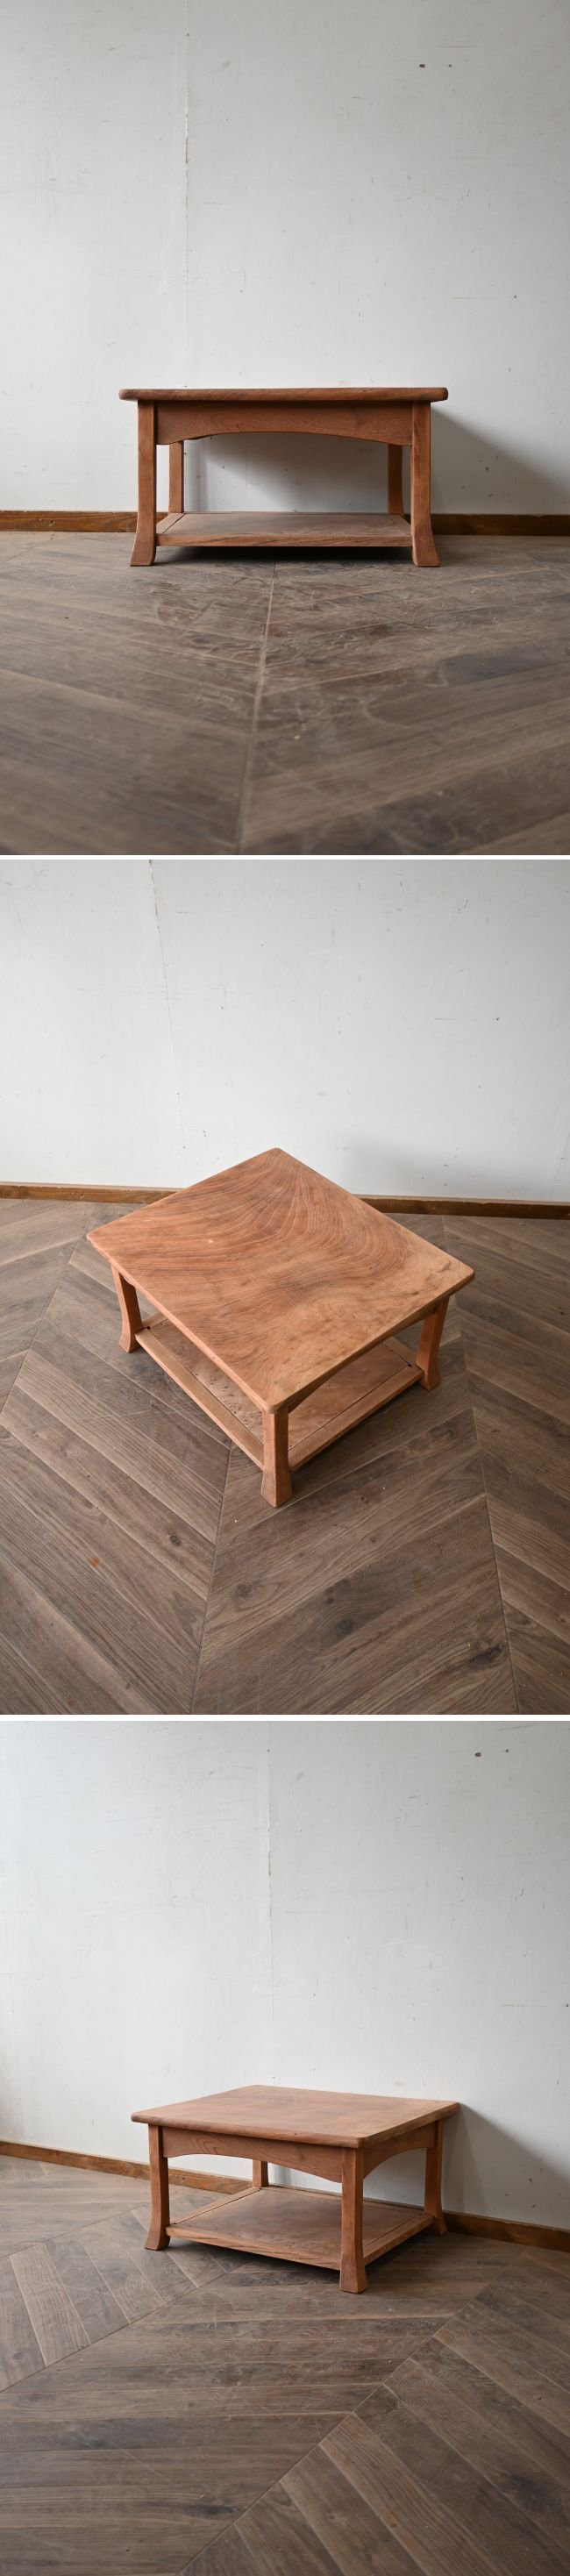 欅の飾り台テーブル - SANNPO 古道具店 online shop